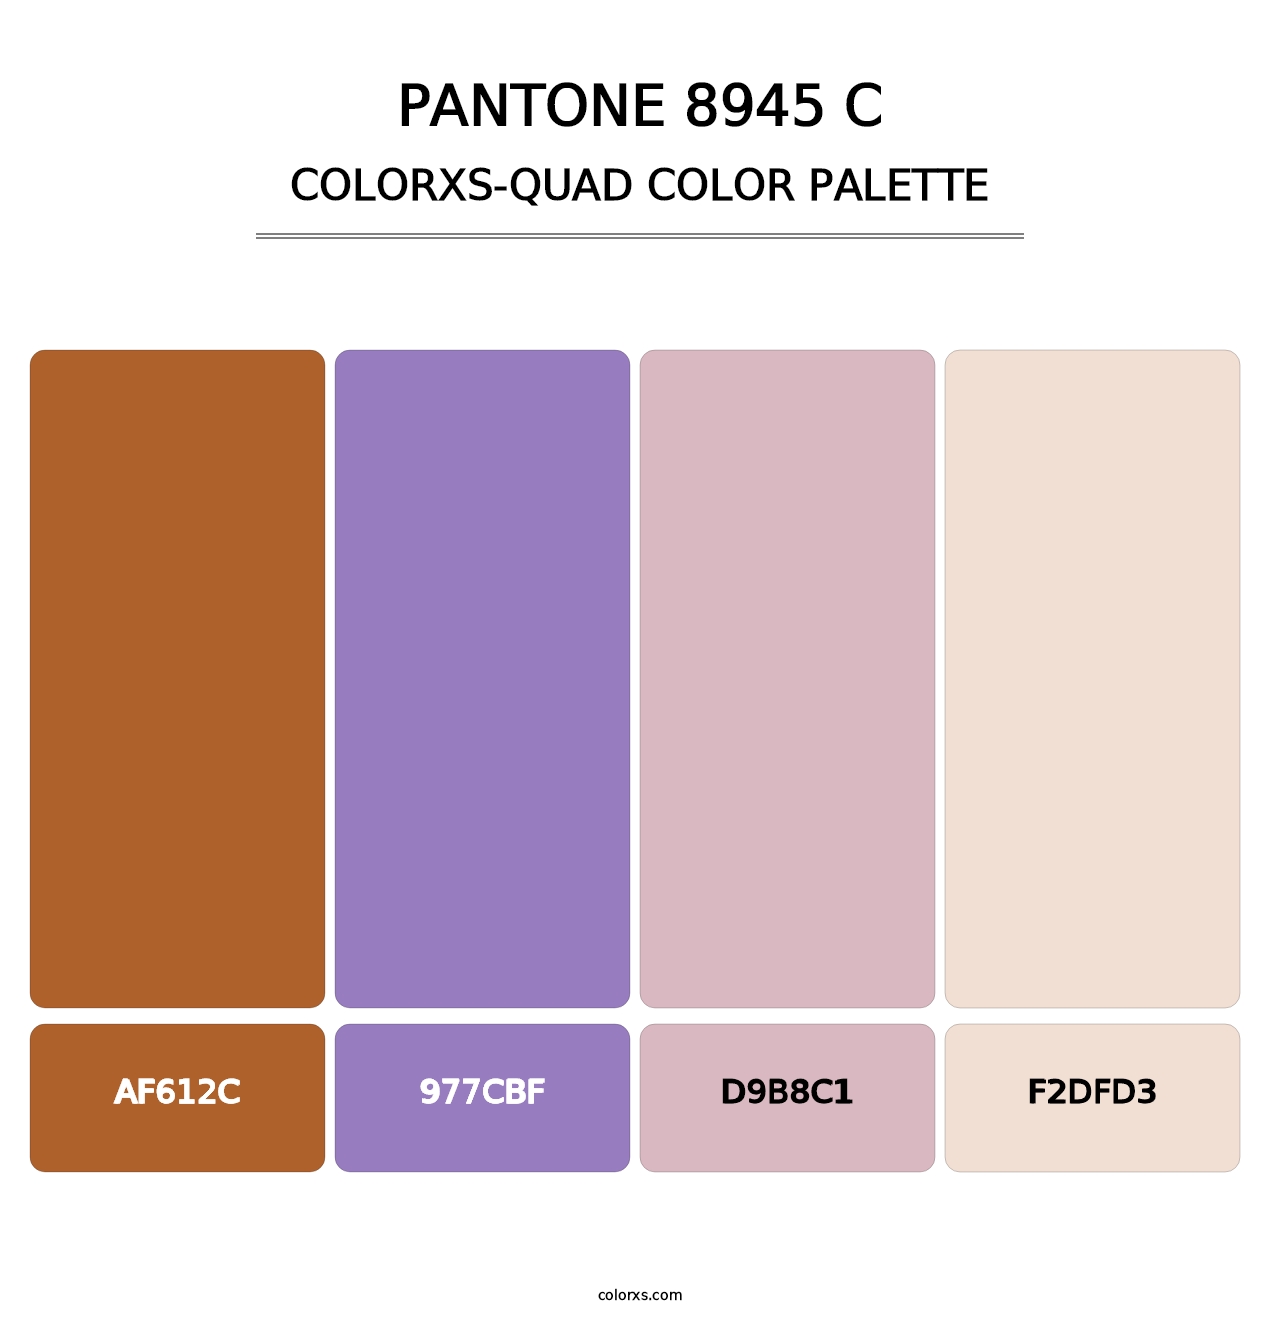 PANTONE 8945 C - Colorxs Quad Palette